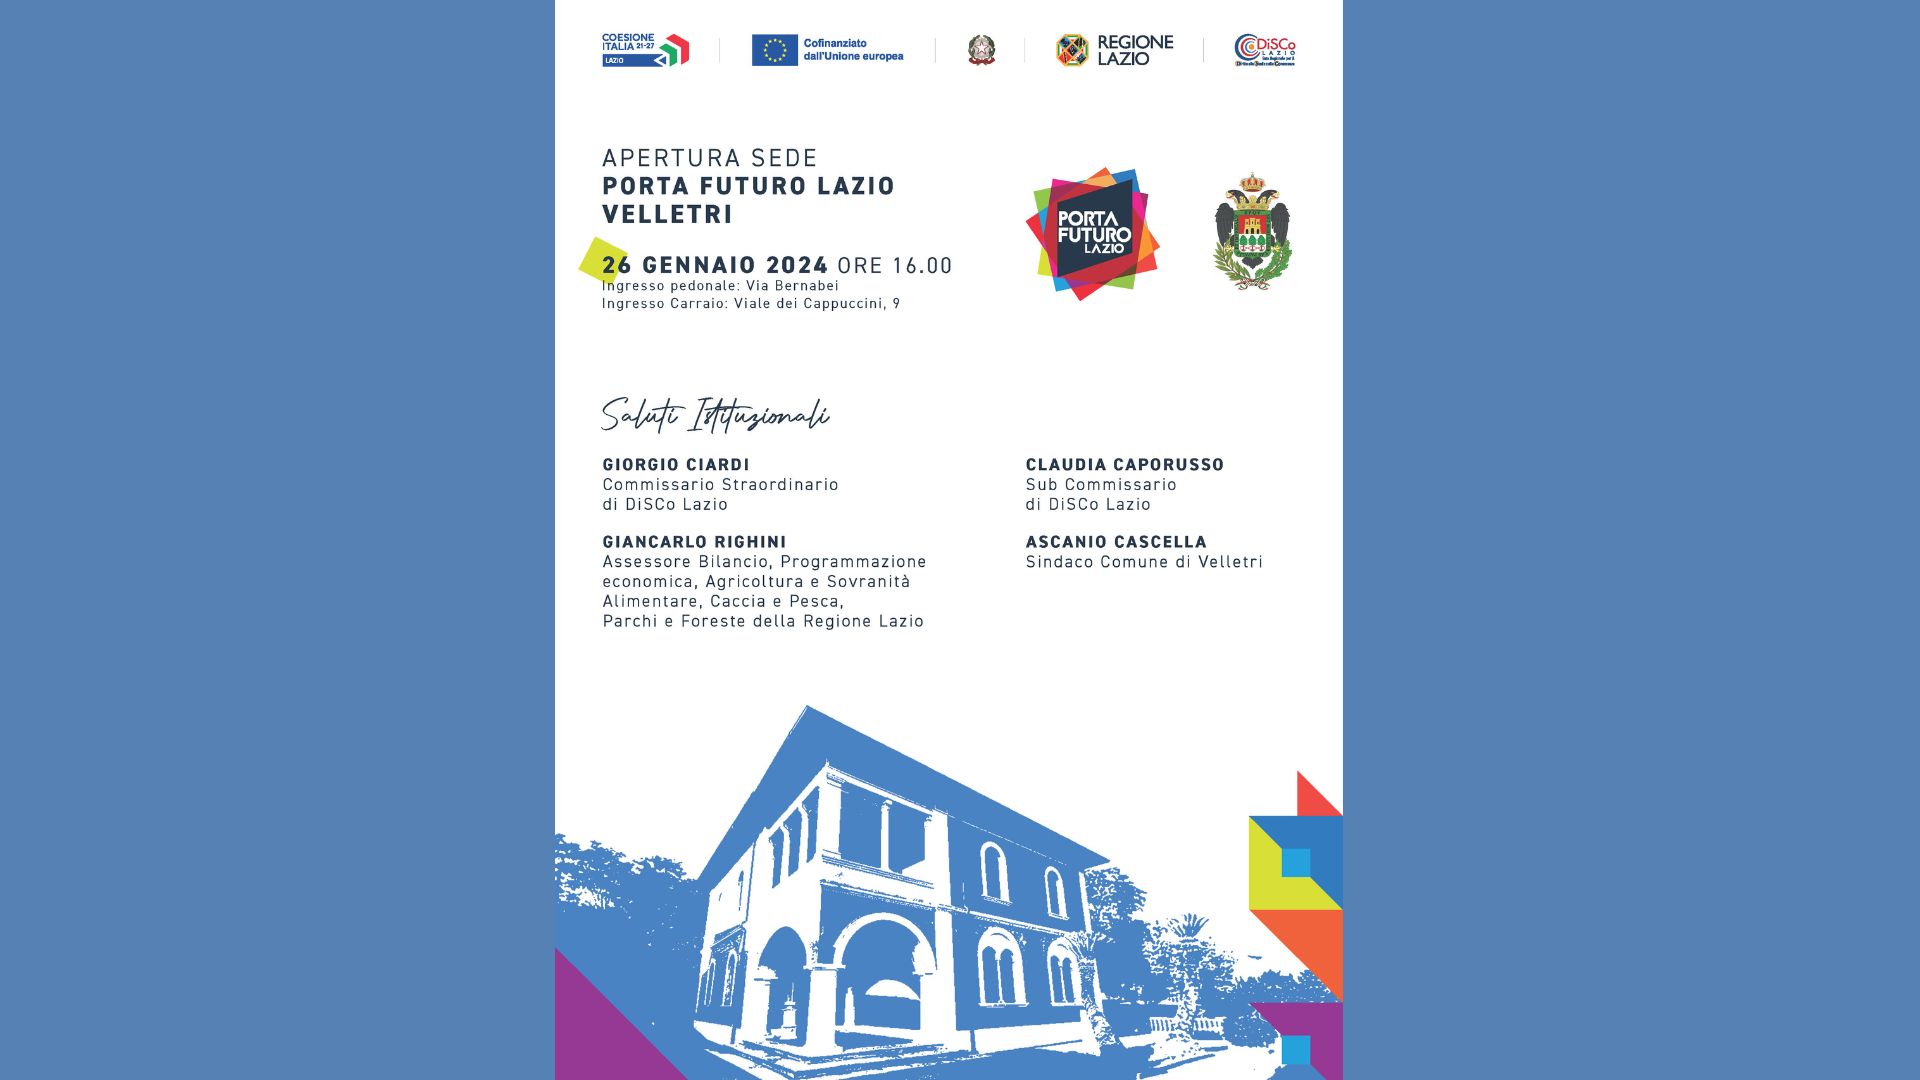 Dalla collaborazione tra DiSCo, Regione Lazio e Comune di Velletri, inaugurazione prossimo 26 gennaio della nuova sede di PFL Velletri